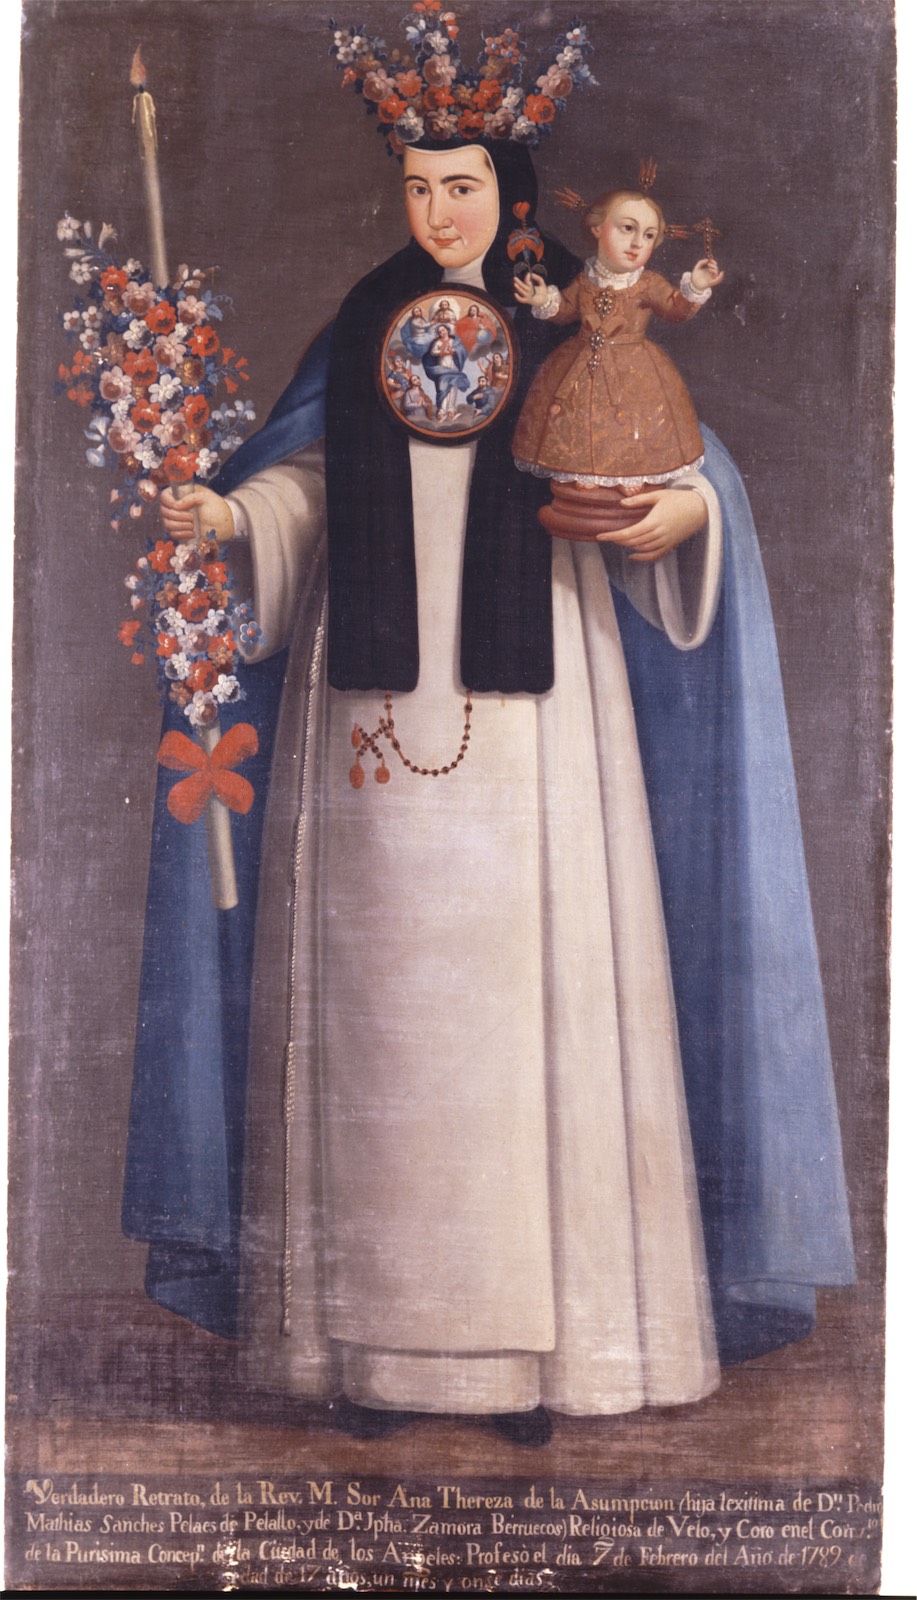 Sor Ana Teresa de la Asunción